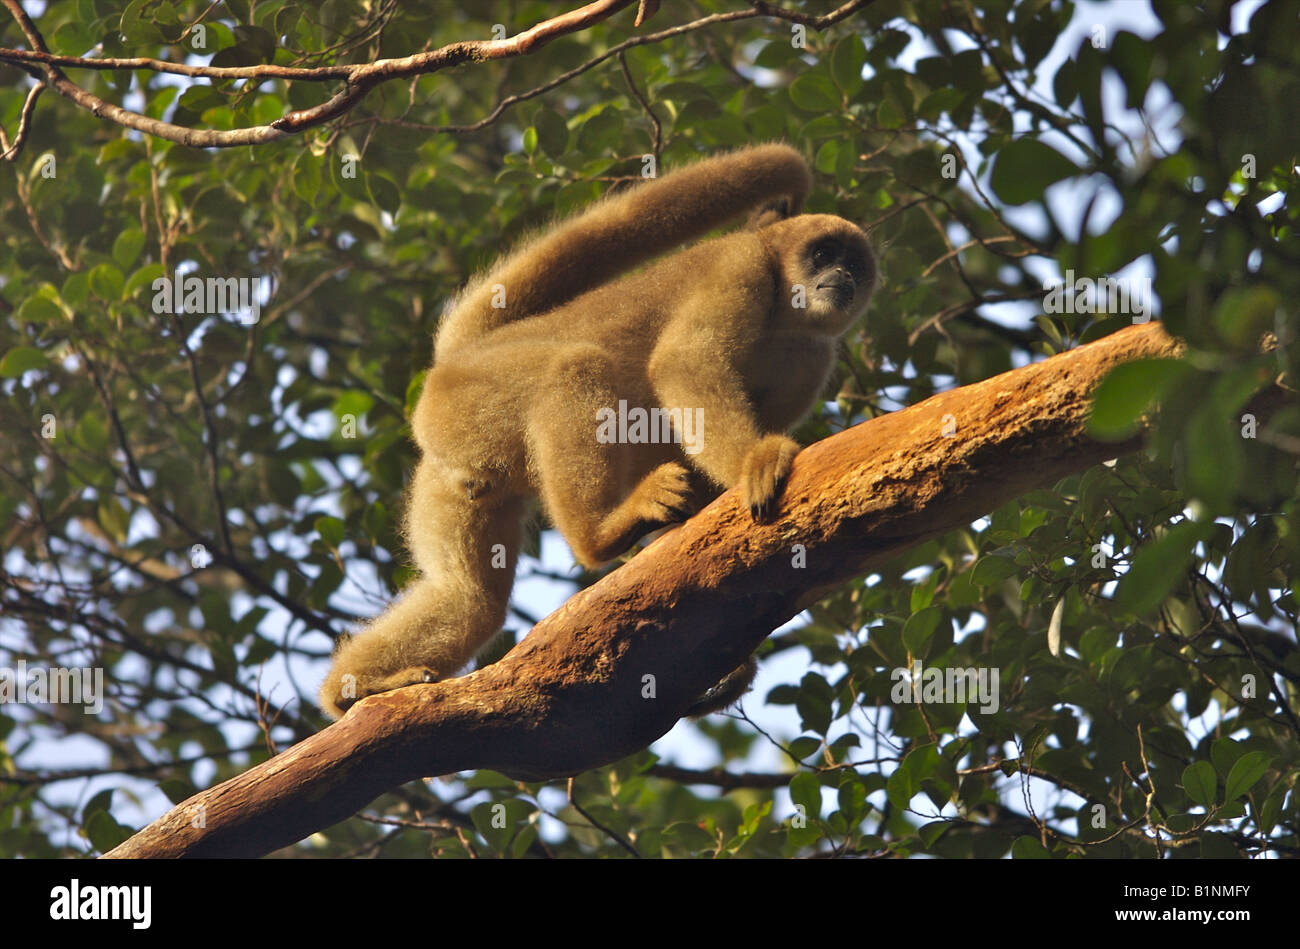 Un singe muriqui du sud, le plus grand primate des Amériques, en voie de disparition, se promenant dans la canopée de la forêt atlantique menacée, au Brésil. Banque D'Images